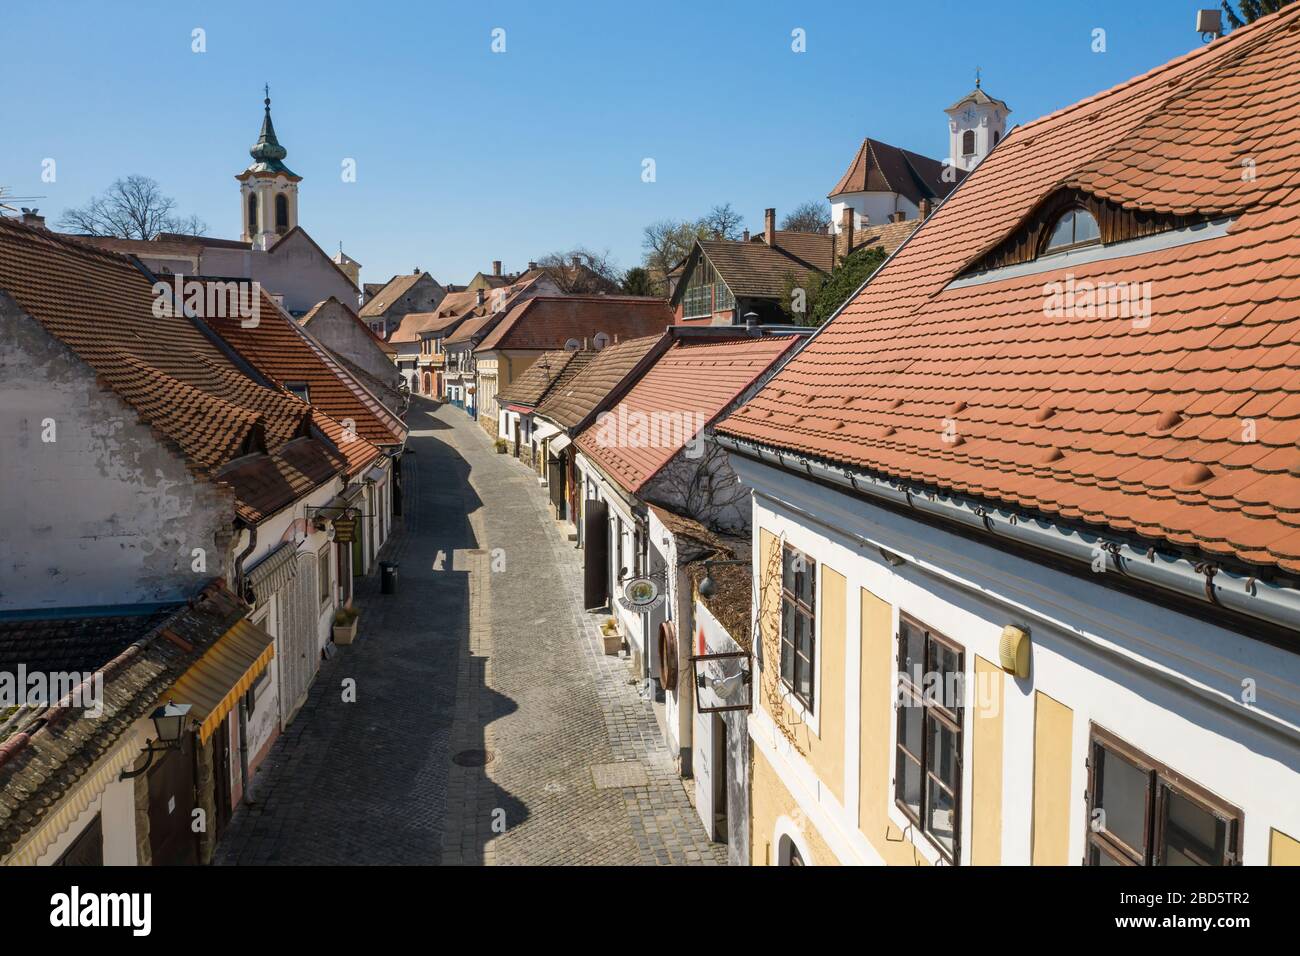 Leeres Touristenziel in Szentendre, Ungarn. Normalerweise voll von Touristen und Basaren. Reisebranche, Tourismus in Europa gestoppt (Coronavirus) Stockfoto